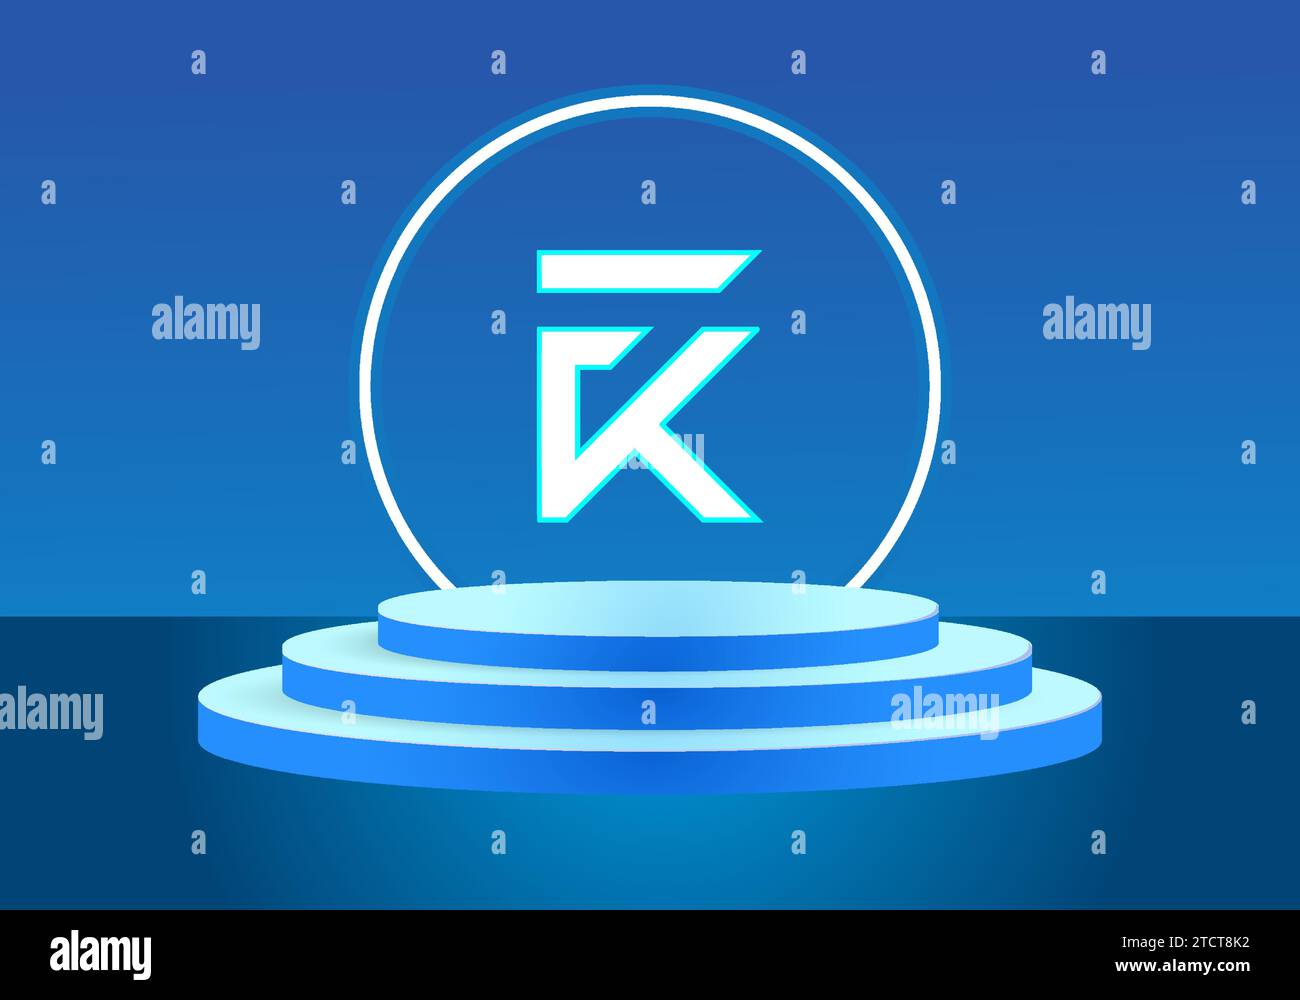 Letter FK blue logo sign. Vector logo design for business. Stock Vector